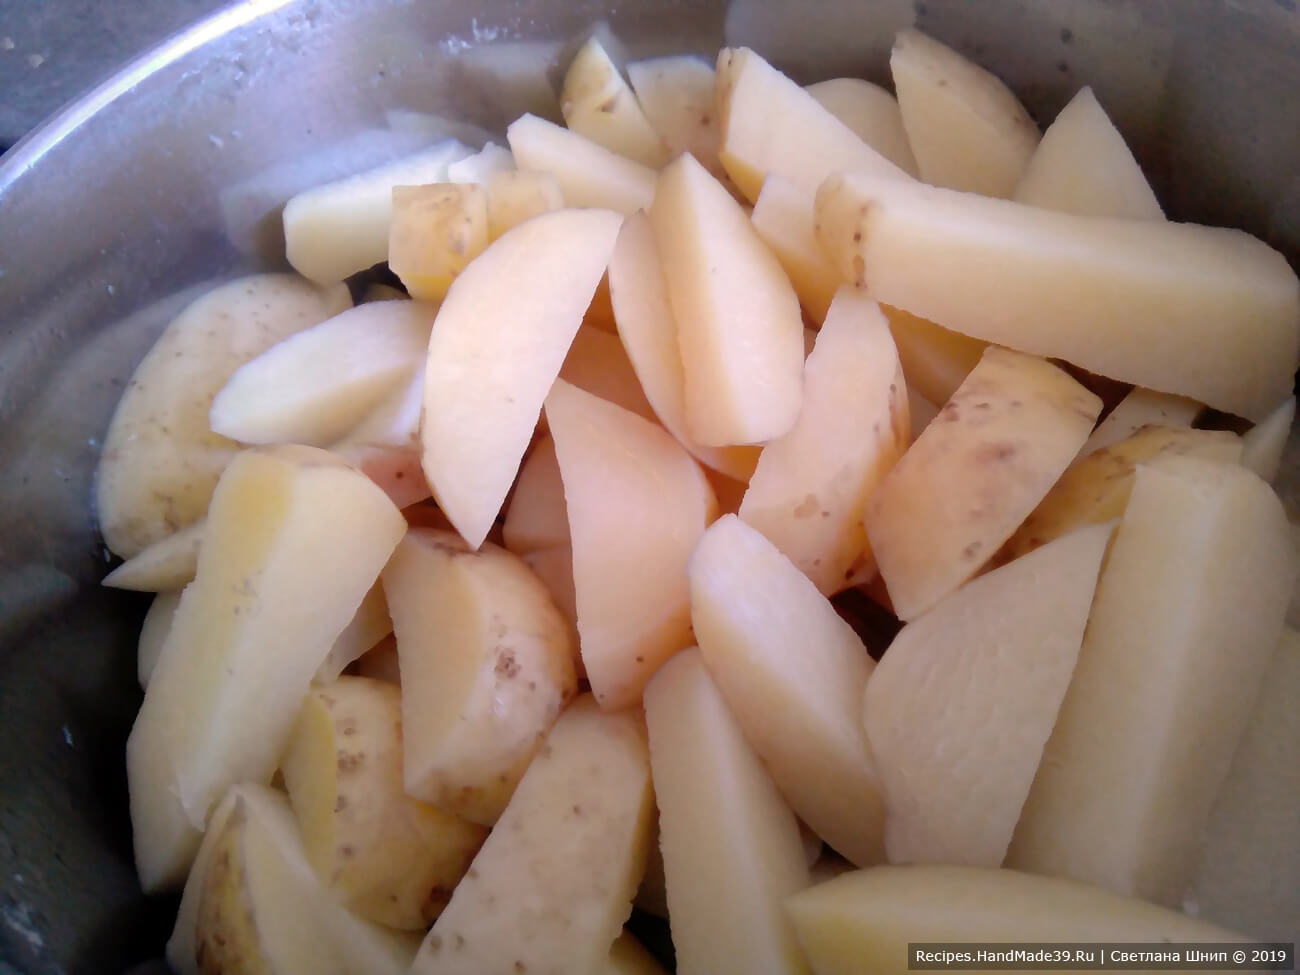 Картофель вымыть, очистить, нарезать крупными кубиками или дольками. Поставить вариться в кипящей подсоленной воде